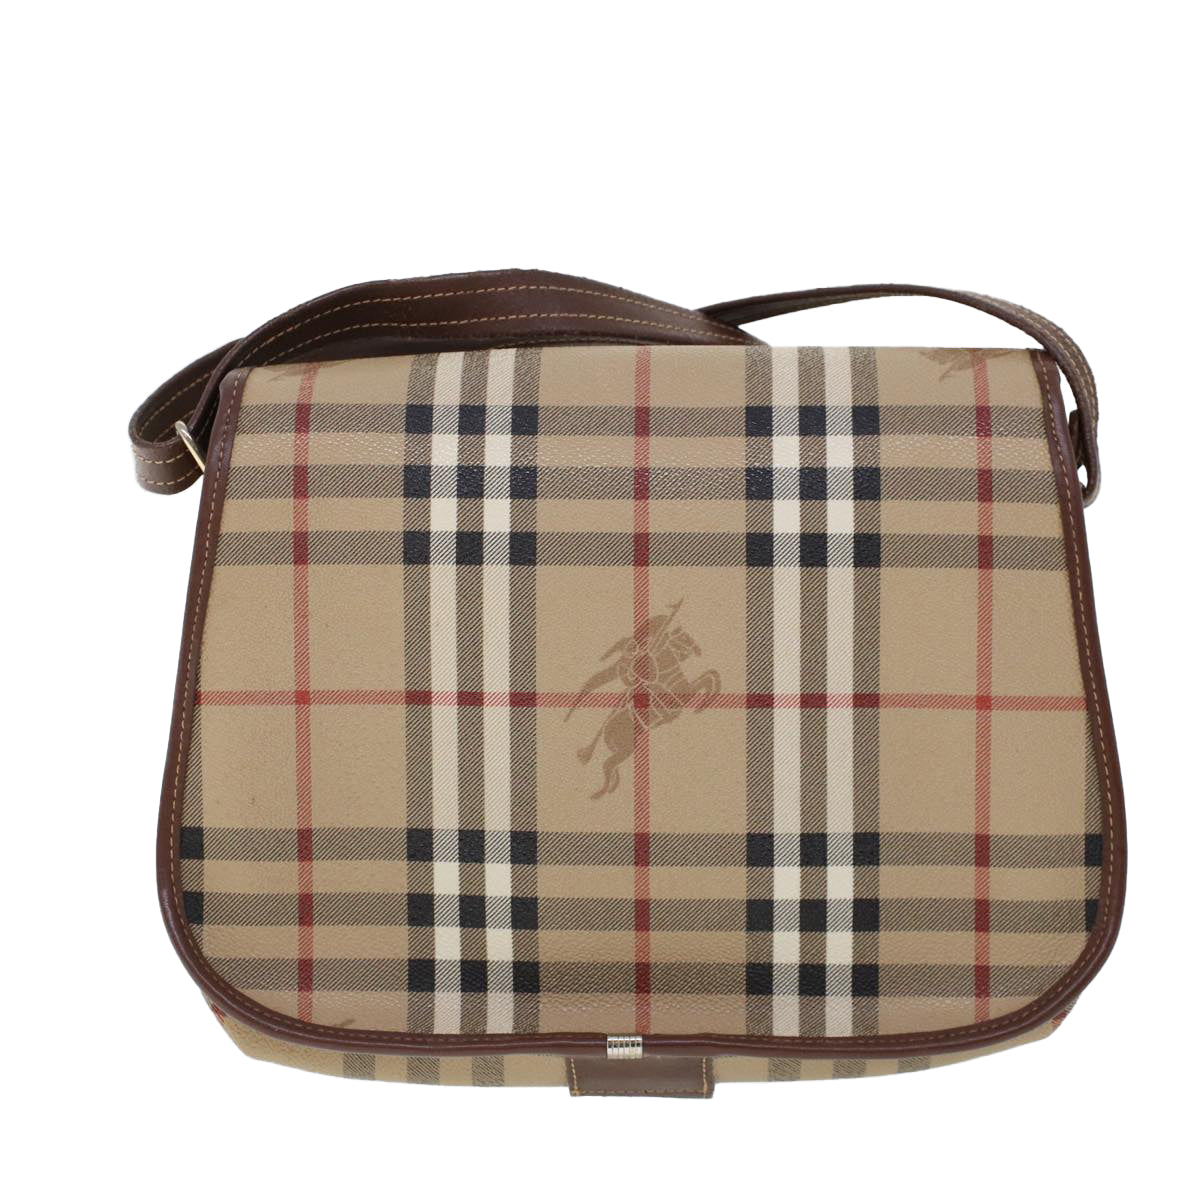 Burberrys Nova Check Shoulder Bag PVC Leather Beige Brown Auth 53779 - 0